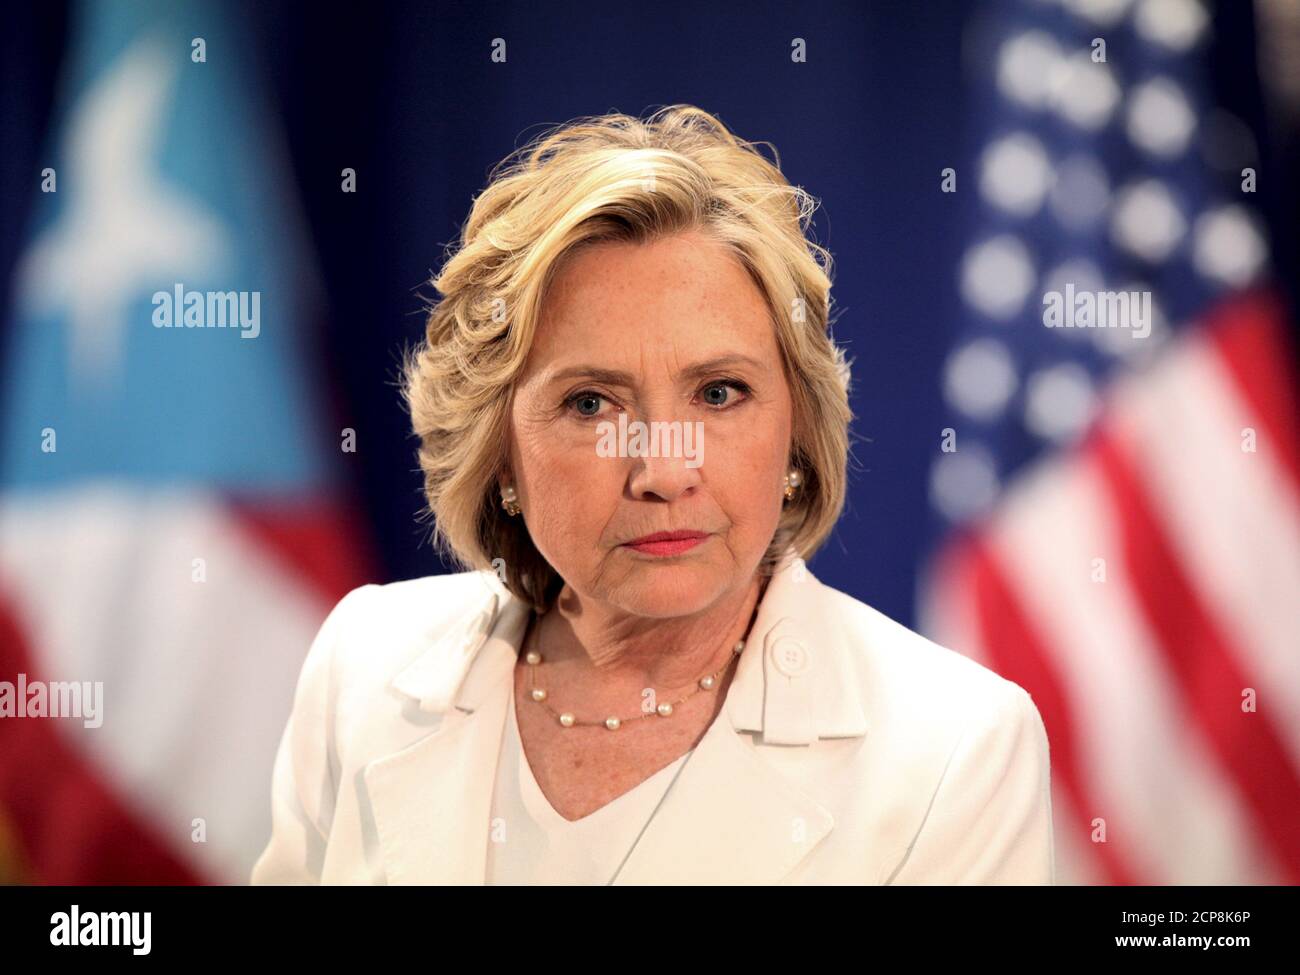 Hillary Clinton, candidata presidencial demócrata de EE.UU., asiste a un  panel sobre salud en San Juan, Puerto Rico, el 4 de septiembre de 2015.  Clinton, que ganó los delegados más demócratas en